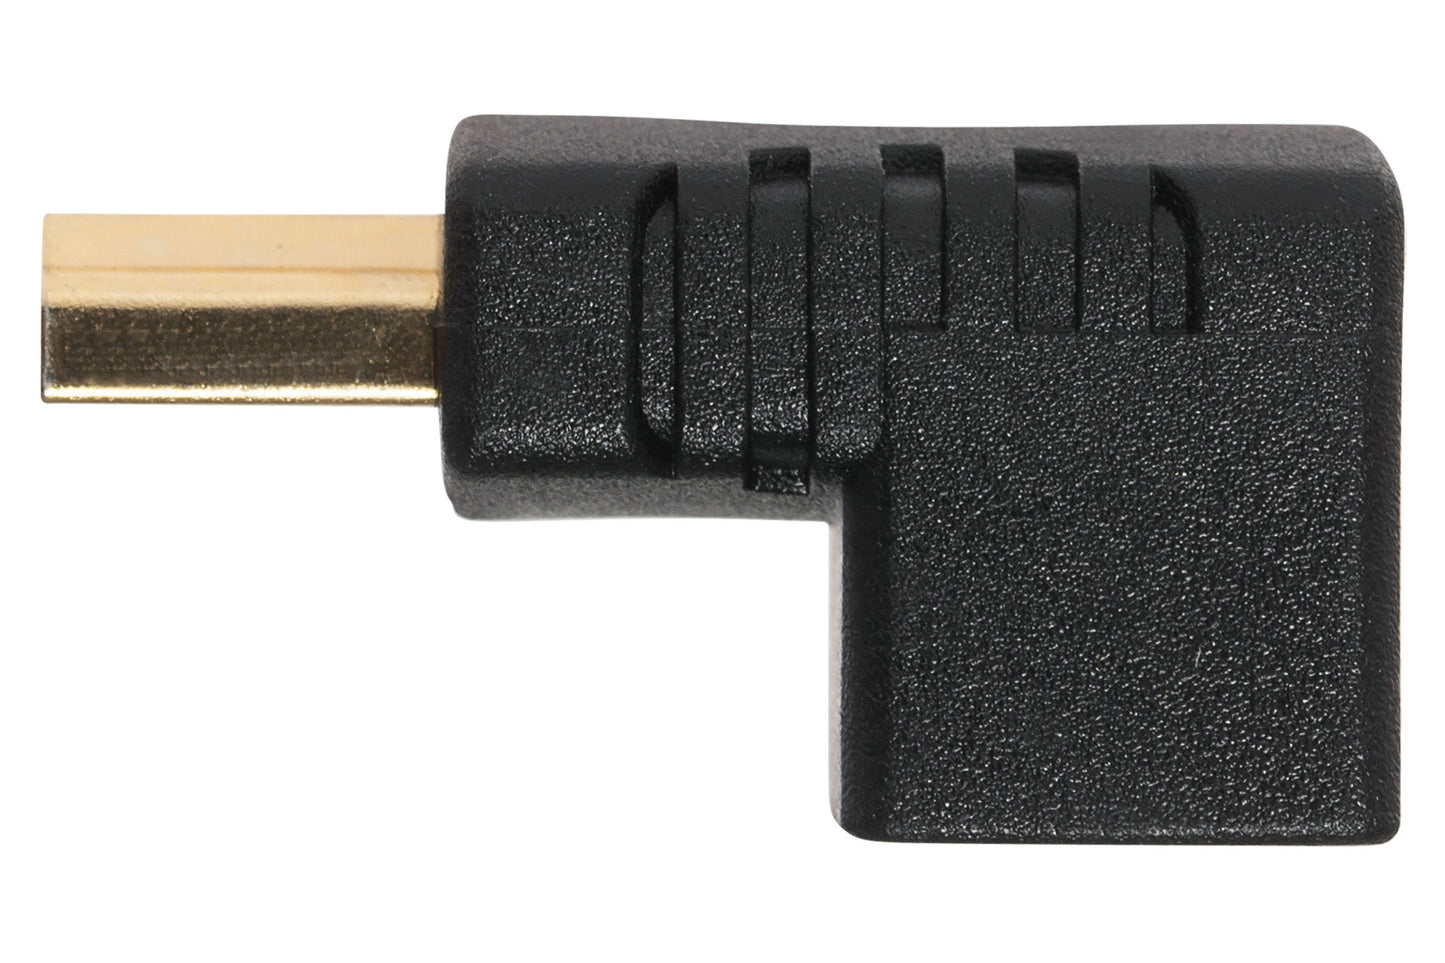 Maplin 90 Degree Fixed Angle HDMI Male to HDMI Female Adapter - Black - maplin.co.uk